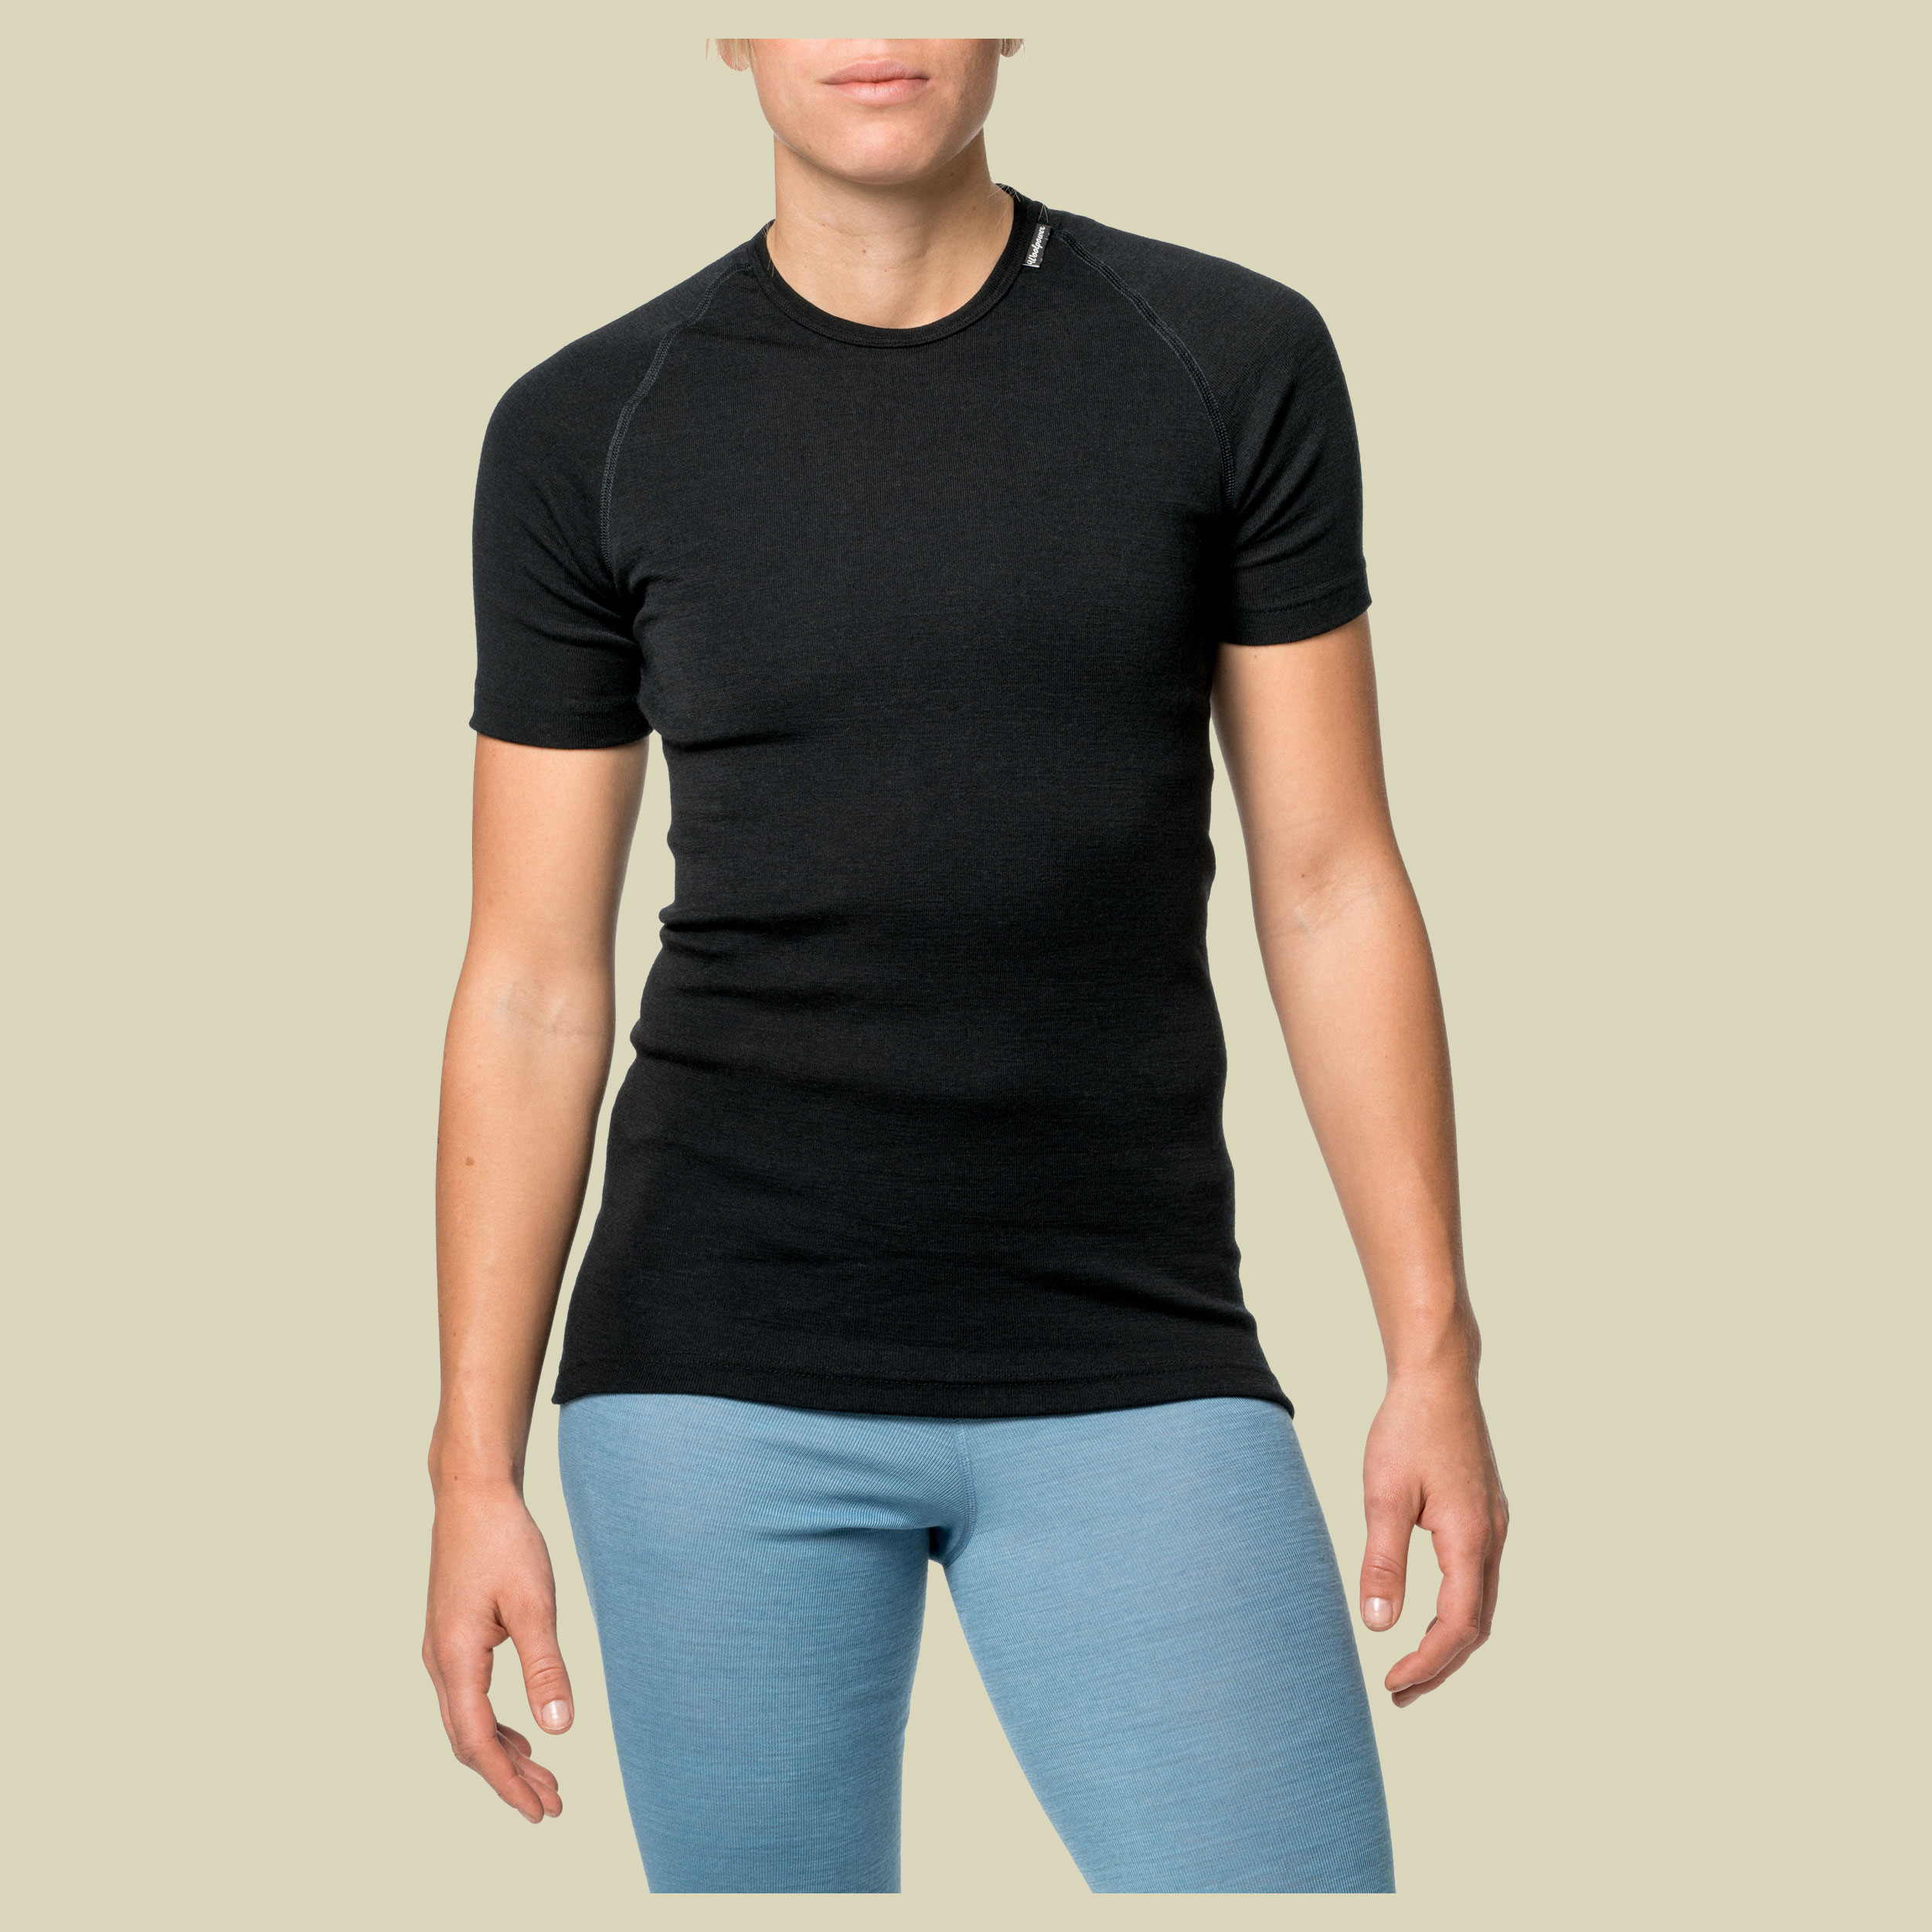 Lite T-Shirt XS schwarz - Farbe black